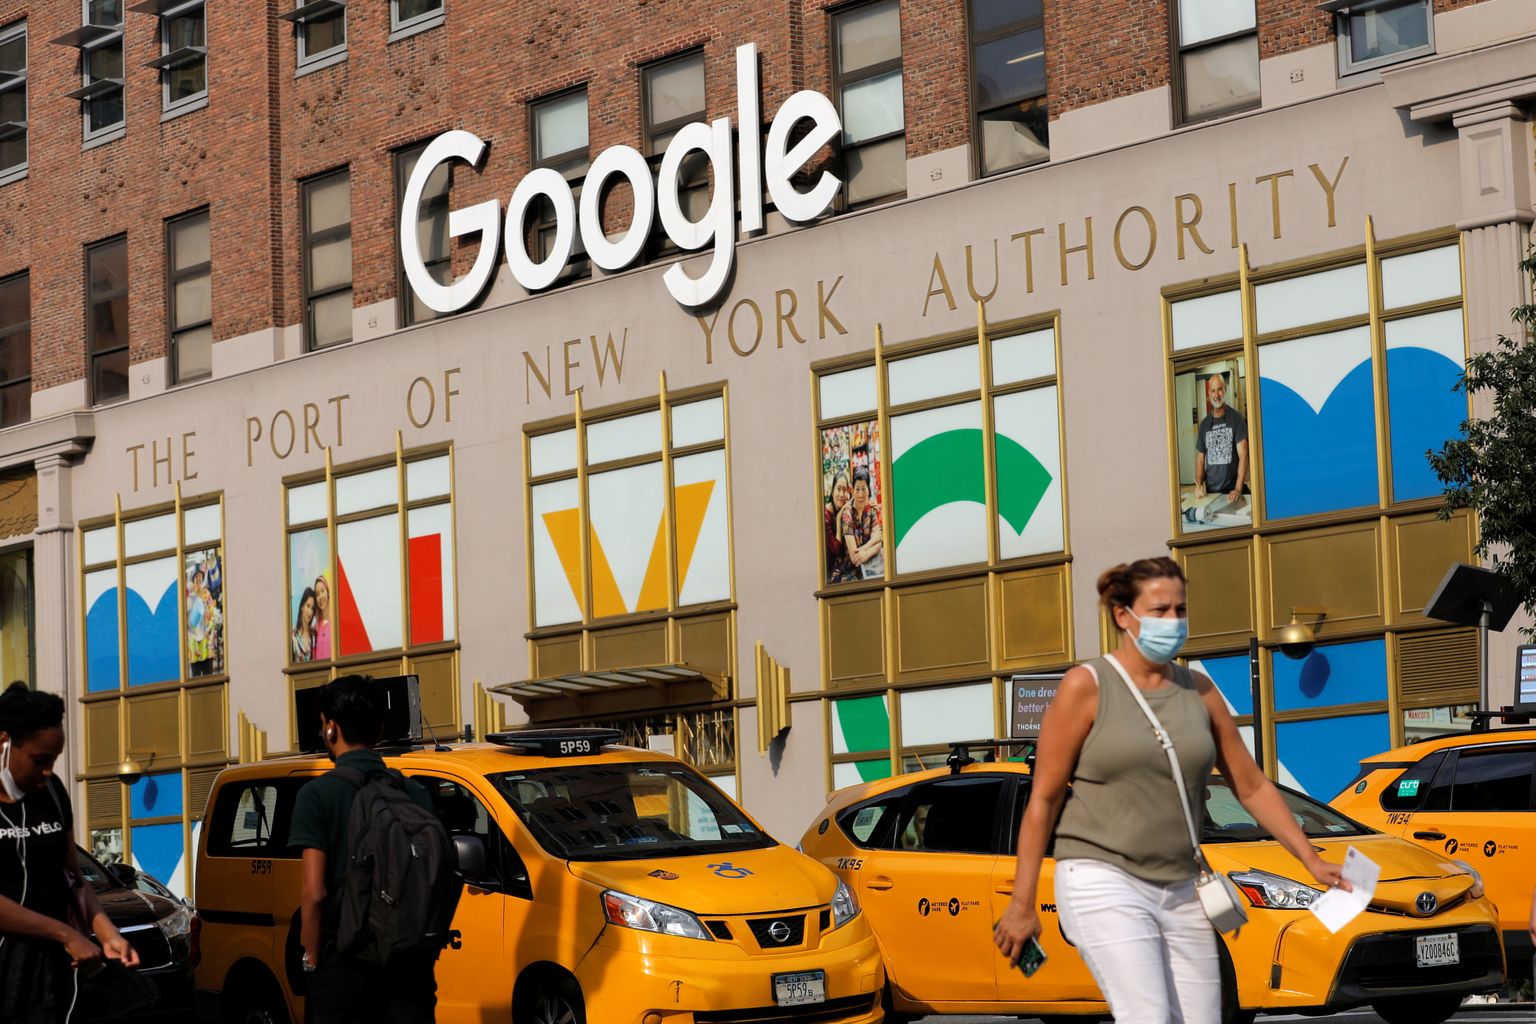 Google'i kontor New Yorgis, kuhu kolitakse jäädavalt.